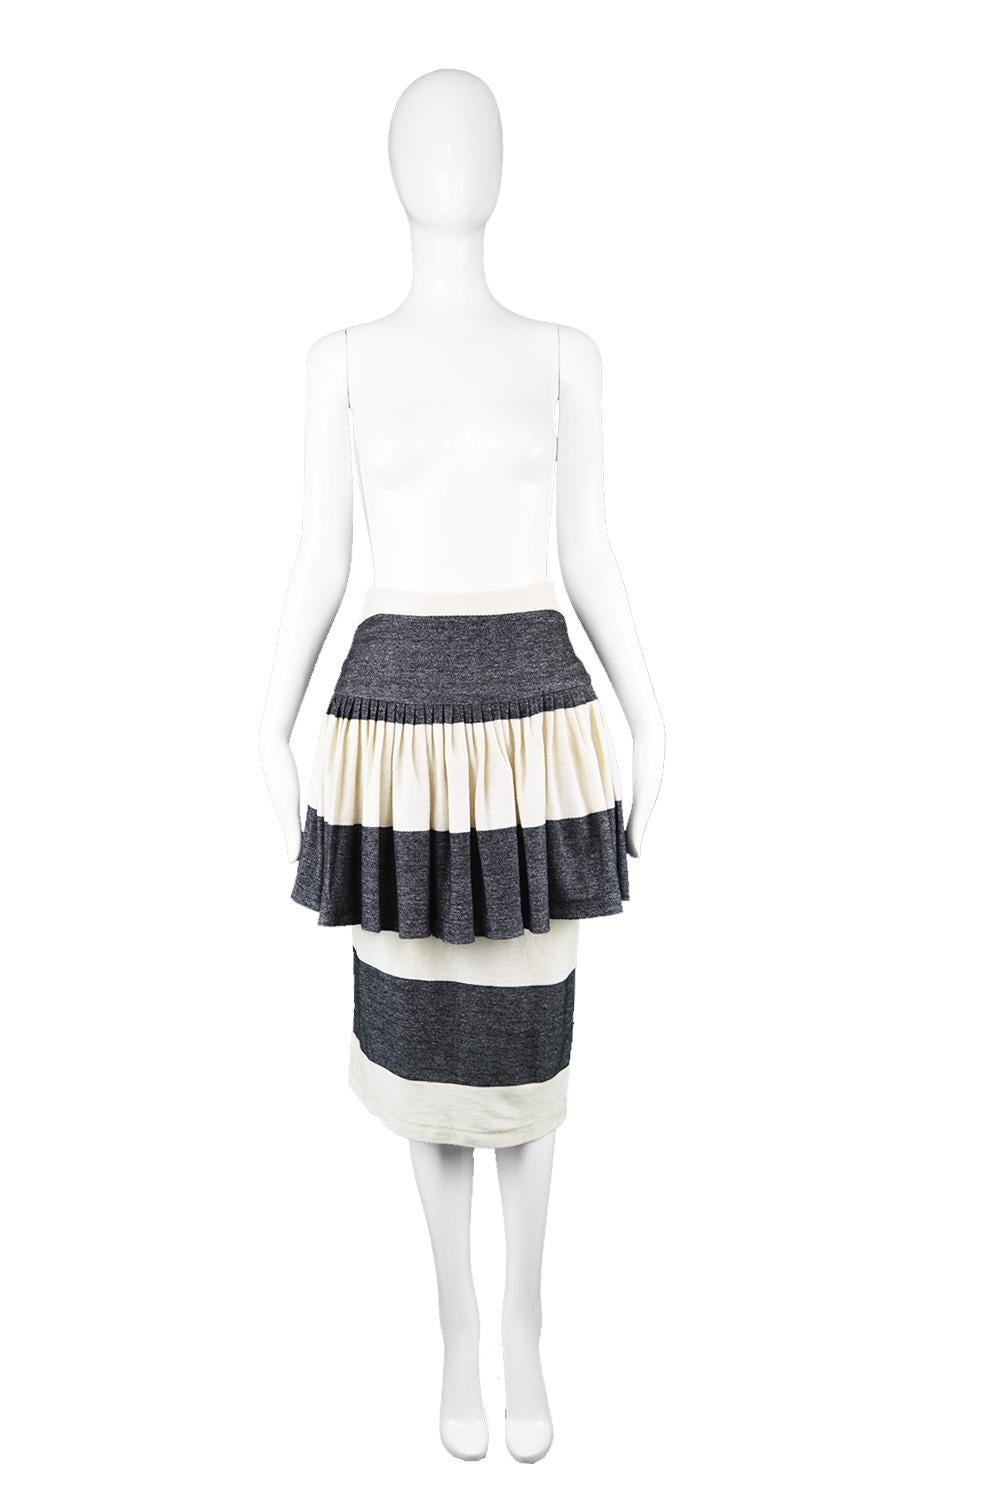 Norma Kamali Vintage Grey & White Cotton Jersey Avant Garde Peplum Skirt, 1980s

Estimated Size: UK 8/ US 4/ EU 36. Please check measurements. 
Waist - 26” / 66cm
Hips - 36” / 91cm
Length (Waist to Hem) - 31” / 79cm

Condition: Excellent Vintage